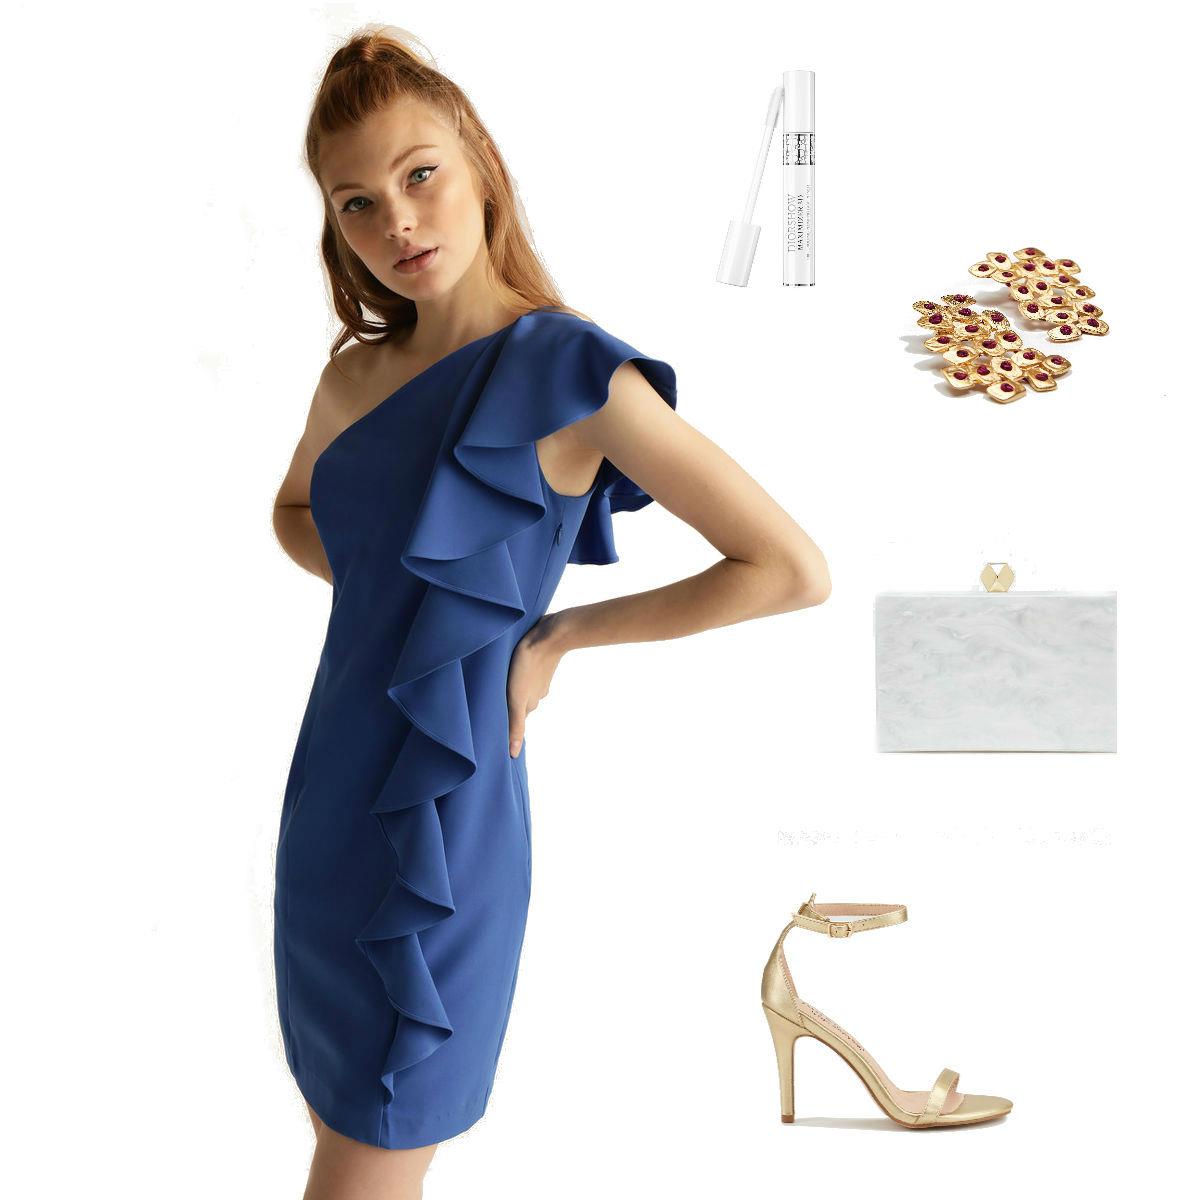 Collar rompecabezas patio de recreo Vestido Azul Complementos, Buy Now, Best Sale, 51% OFF, santaanaurbano.com